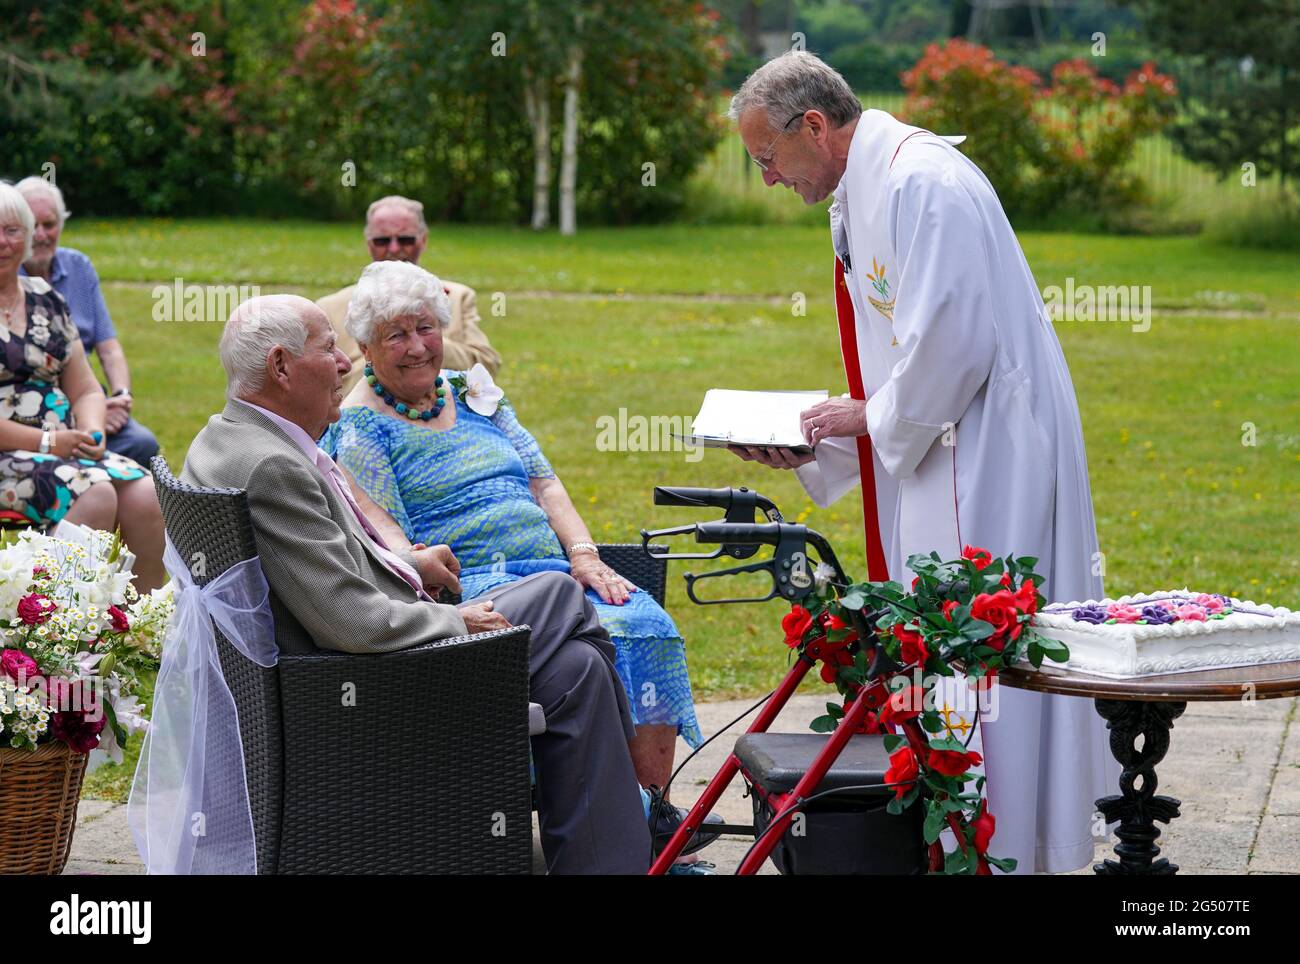 Fred Cobbett, 96 ans, et son épouse Monica, 92 ans, célèbrent leur 71e anniversaire de mariage par le renouvellement de leurs vœux à la maison de soins Fred, Kings Lodge, à West Byfleet, Surrey. Date de la photo: Jeudi 24 juin 2021. Banque D'Images